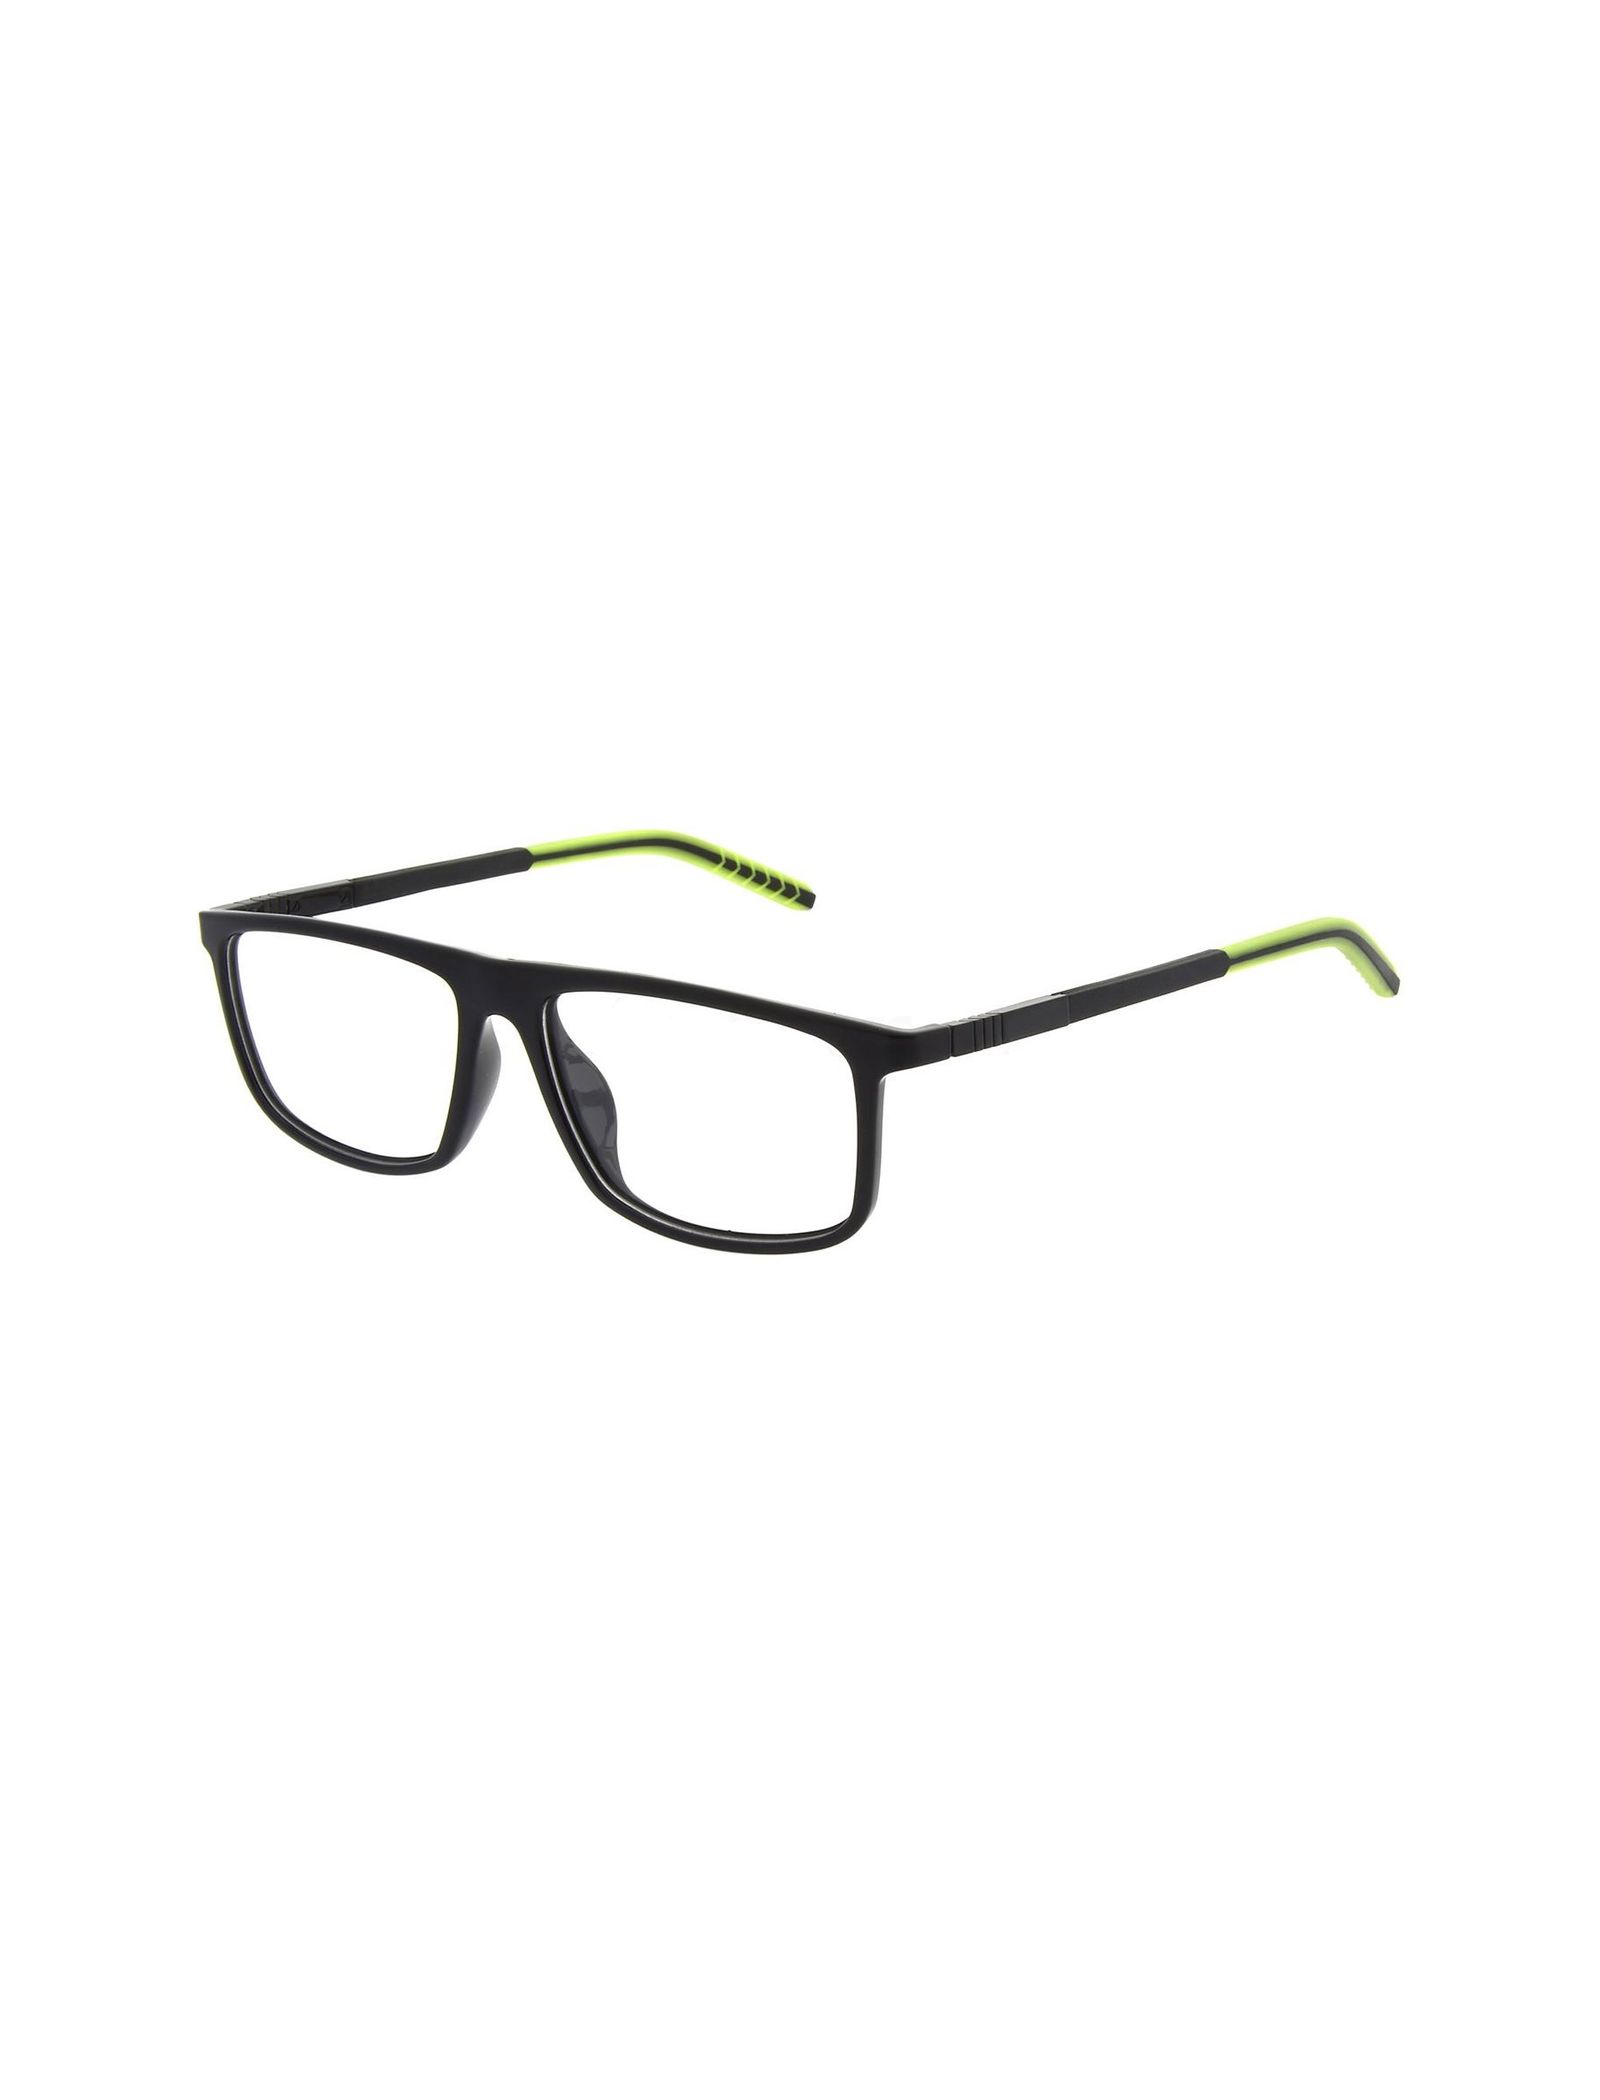 عینک طبی ویفرر مردانه - اسپاین - مشکي و سبز - 2